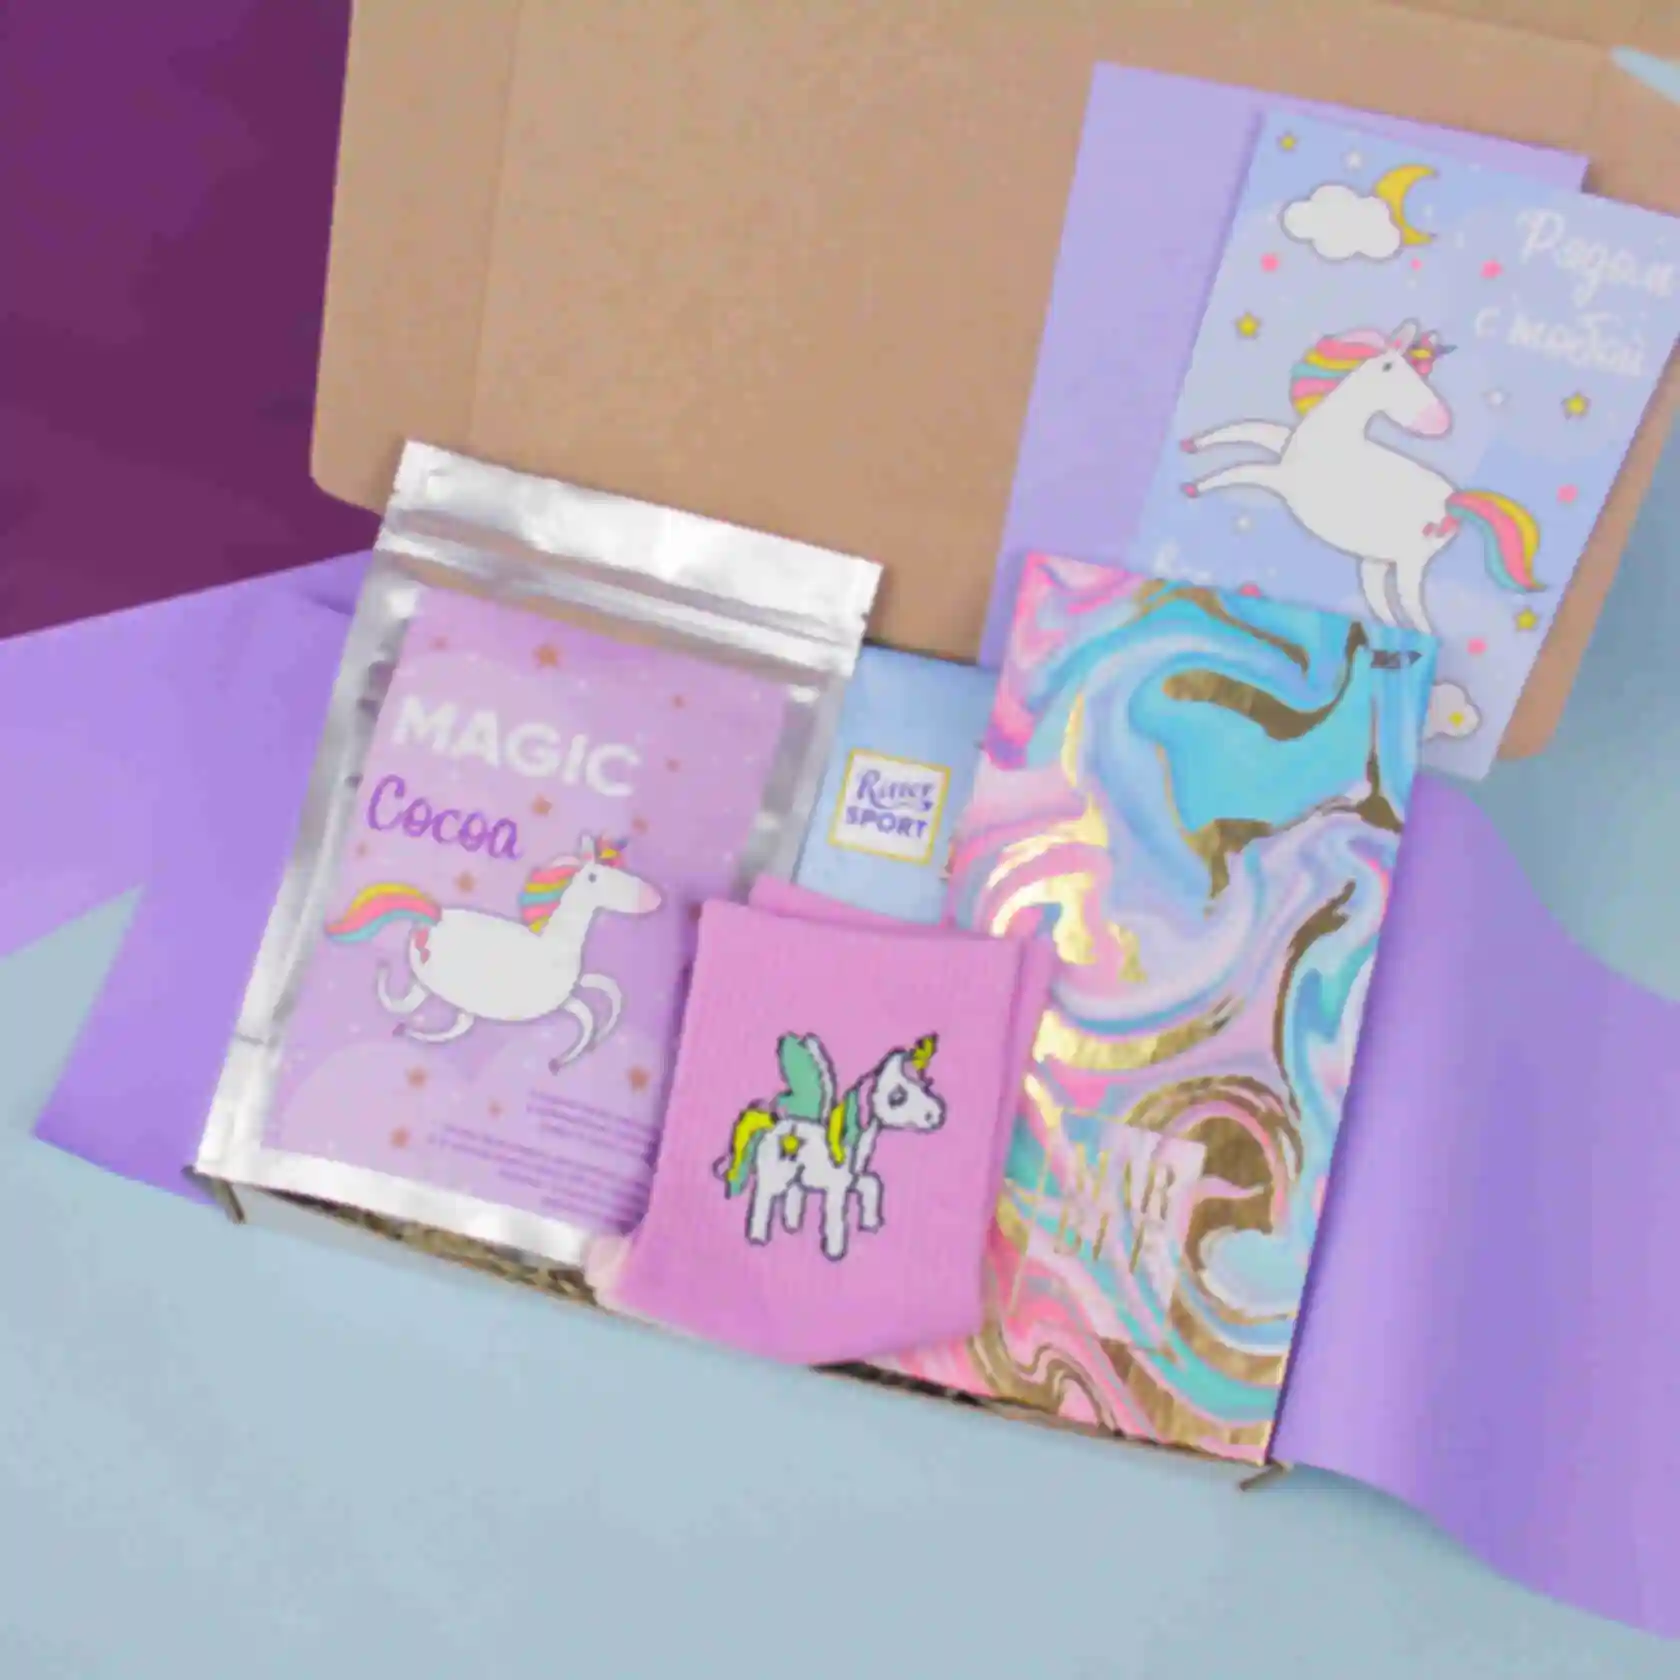 АРХИВ Подарочный набор «Unicorn box» ⦁ mini ⦁ Подарок девушке, подруге, сестре, дочке